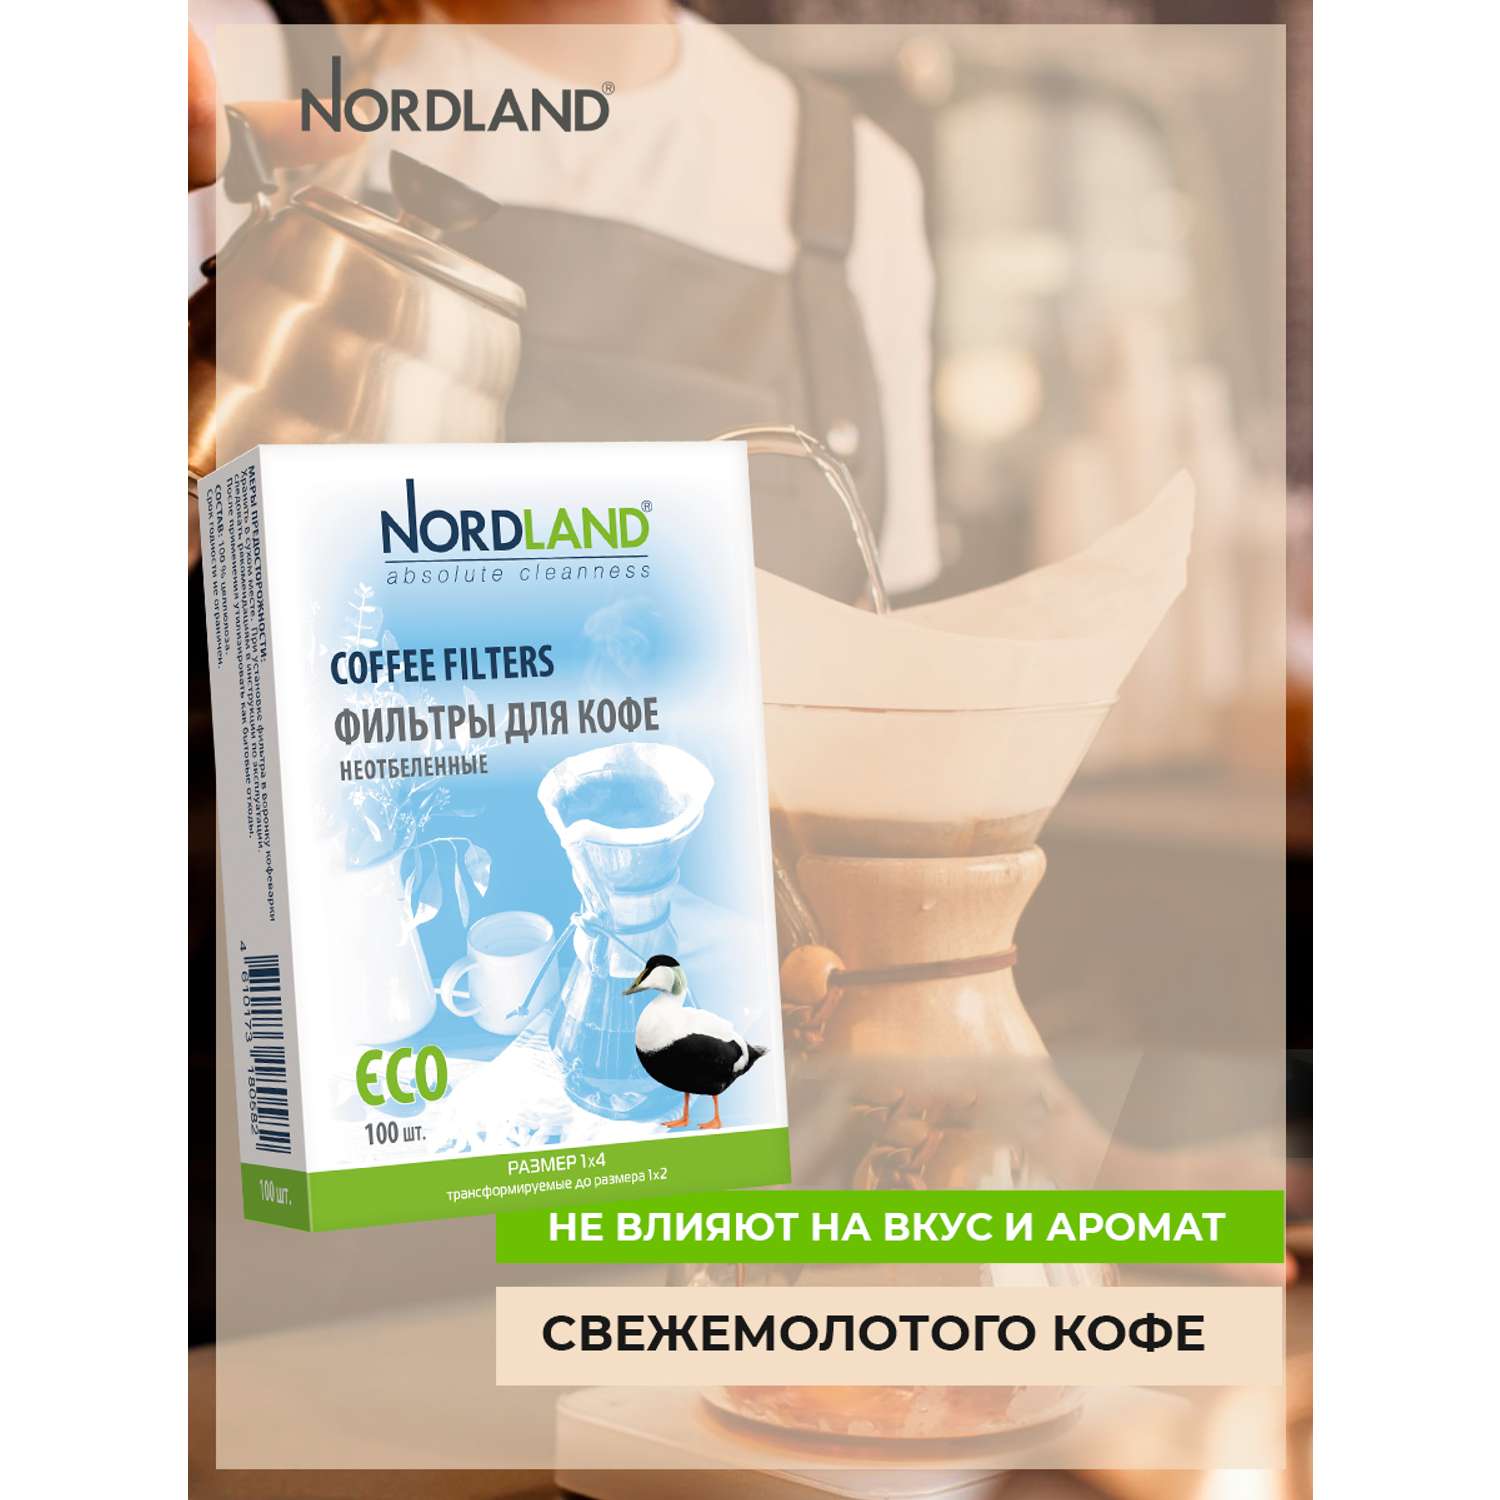 Фильтры Nordland для кофе неотбеленные размер 1х4. 100 шт. в коробке - фото 7